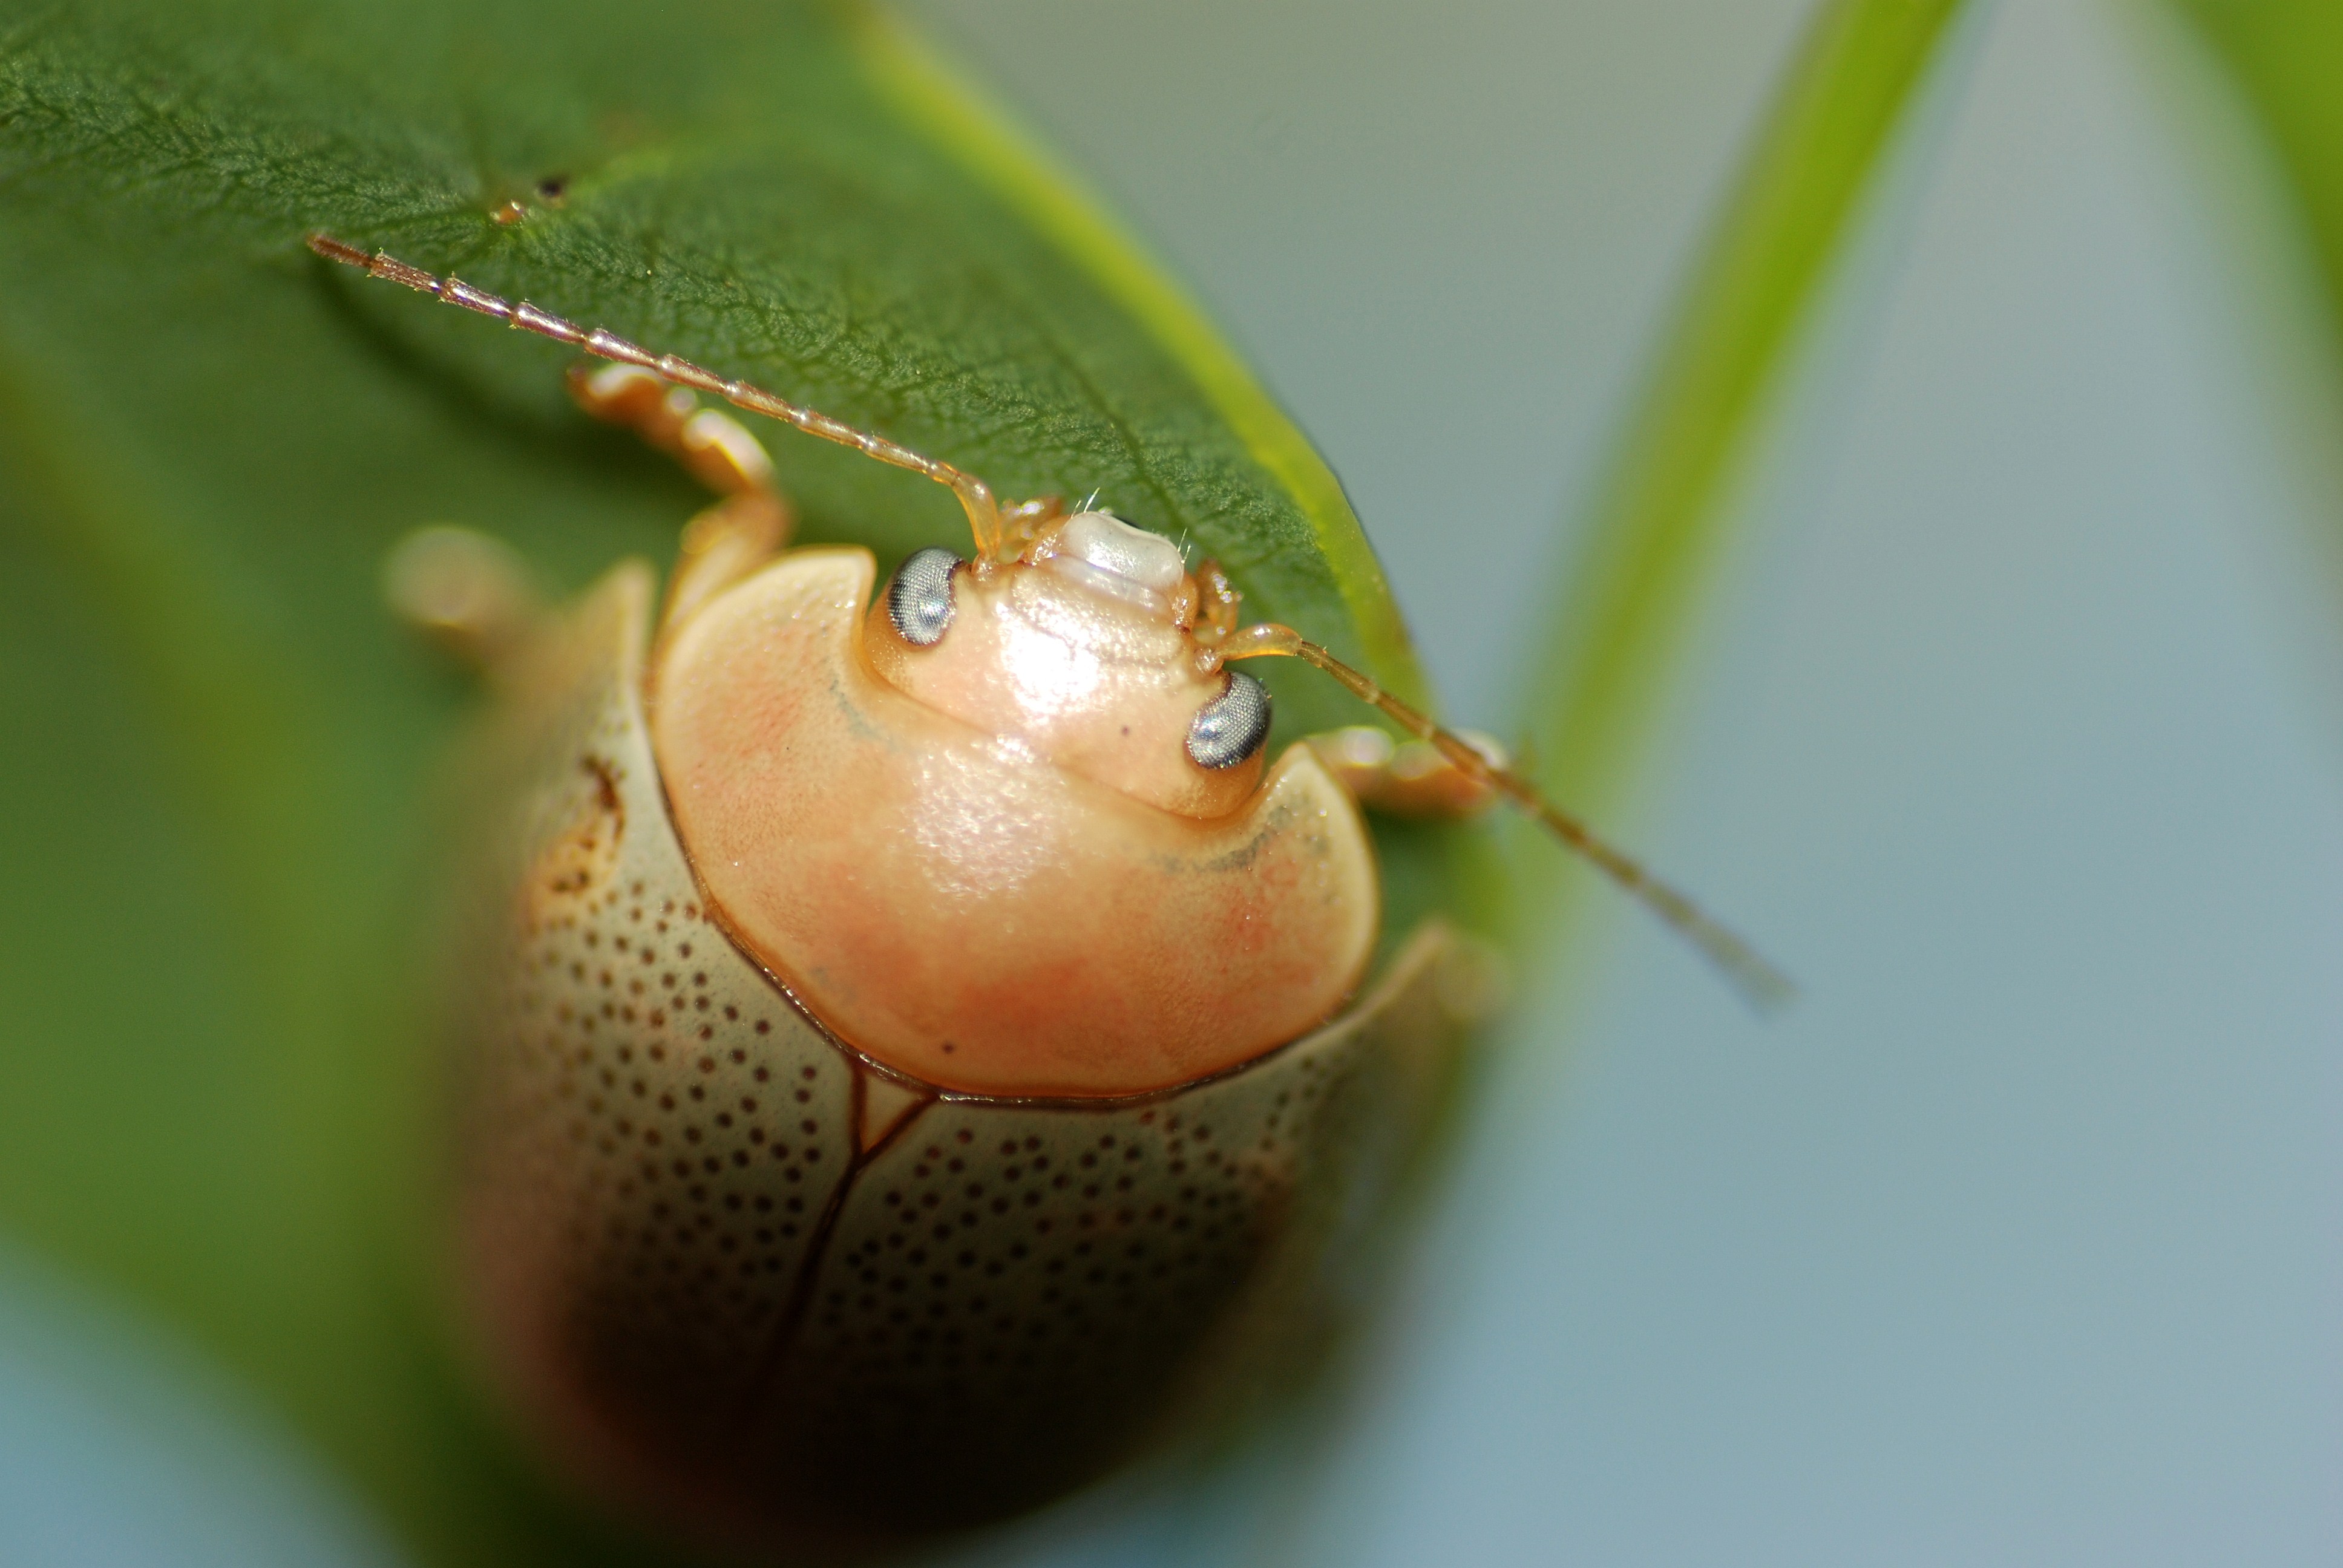 animals, insects, Bug, beetles, macro - desktop wallpaper